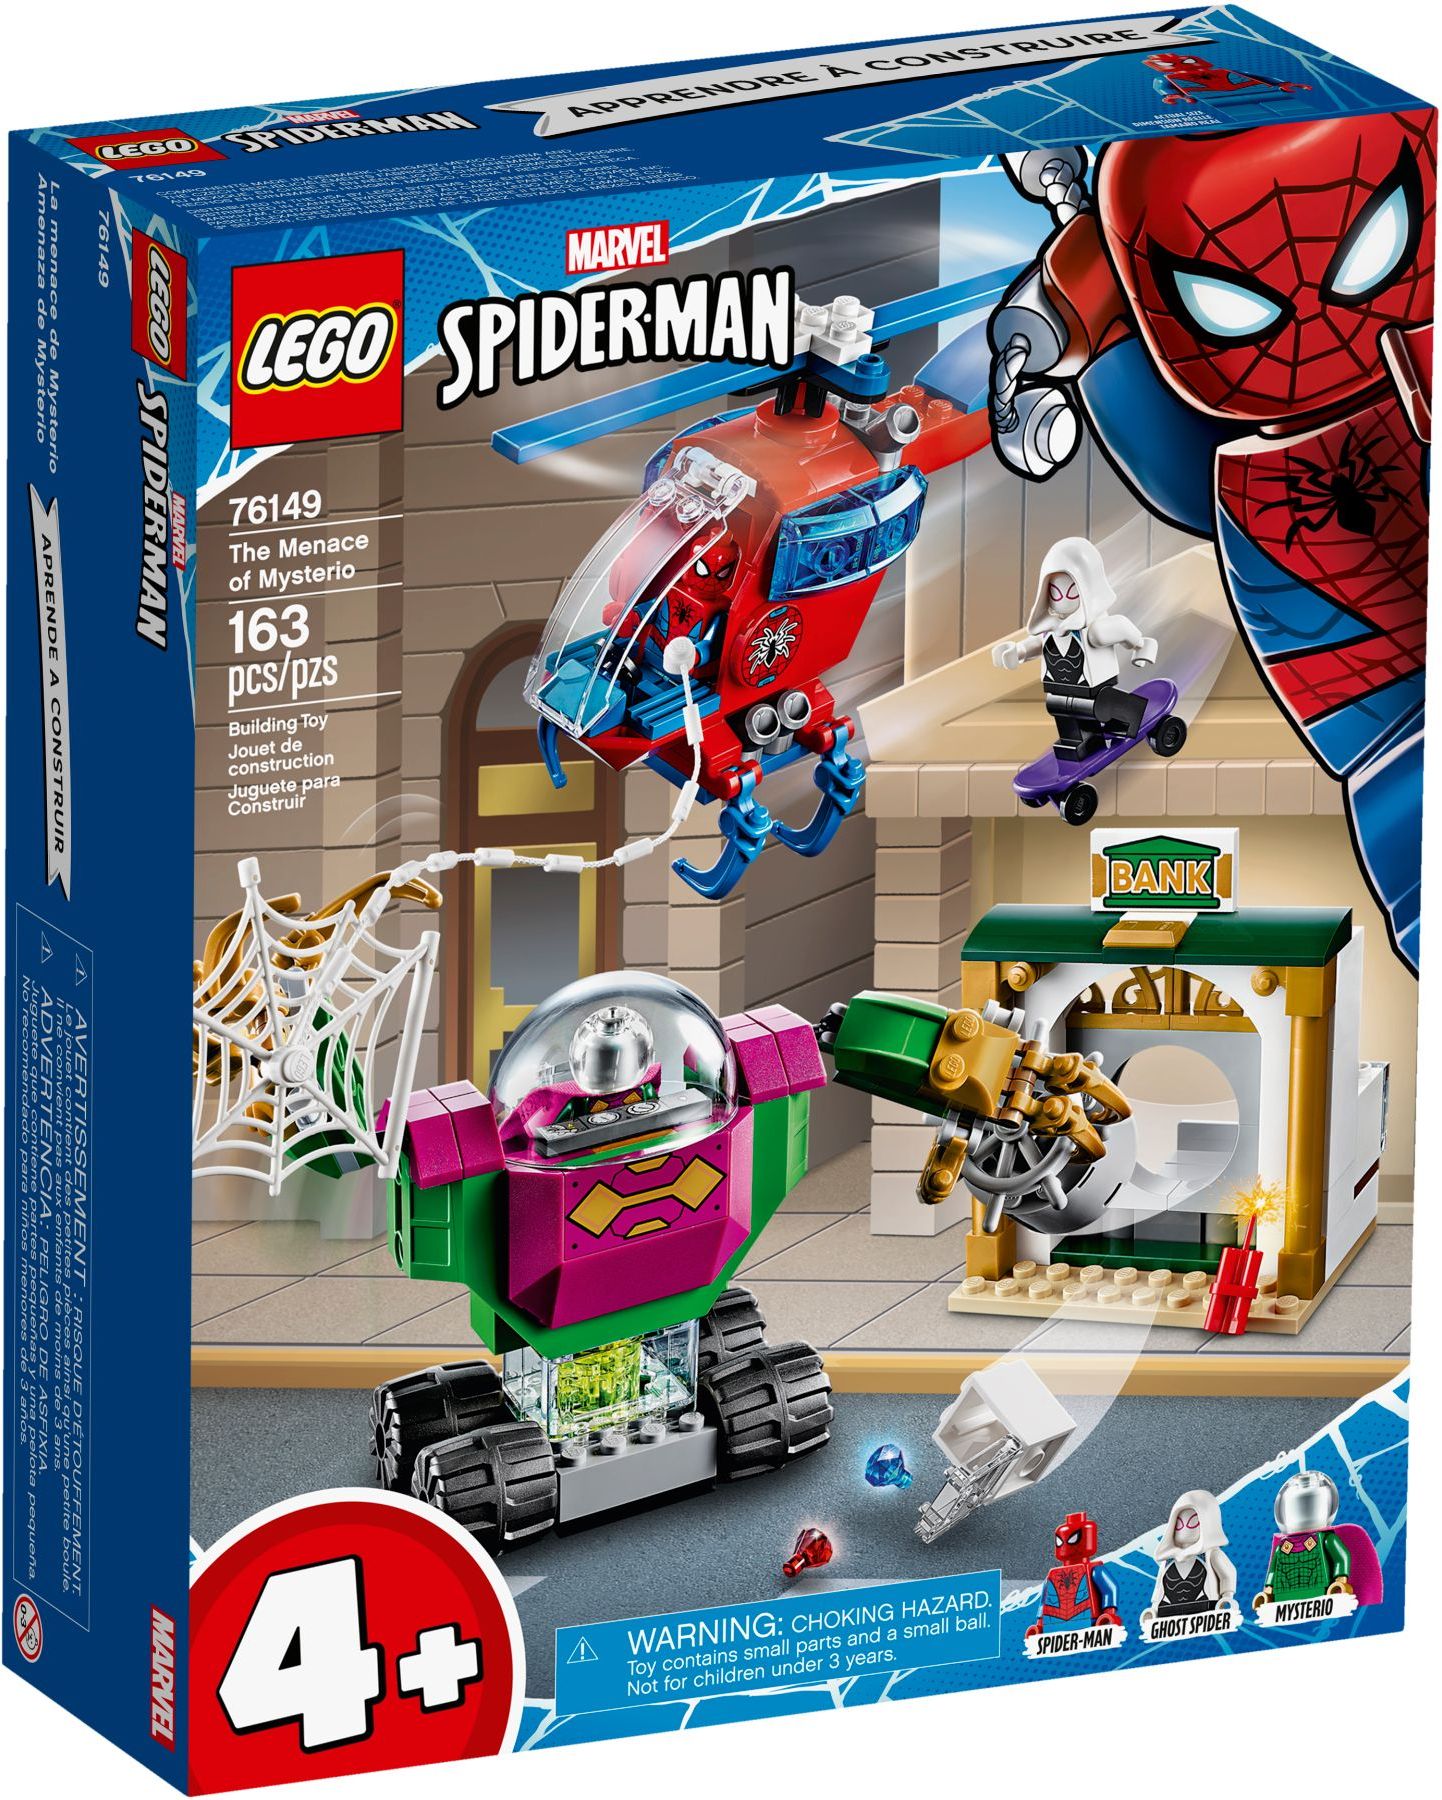 spider gwen lego set